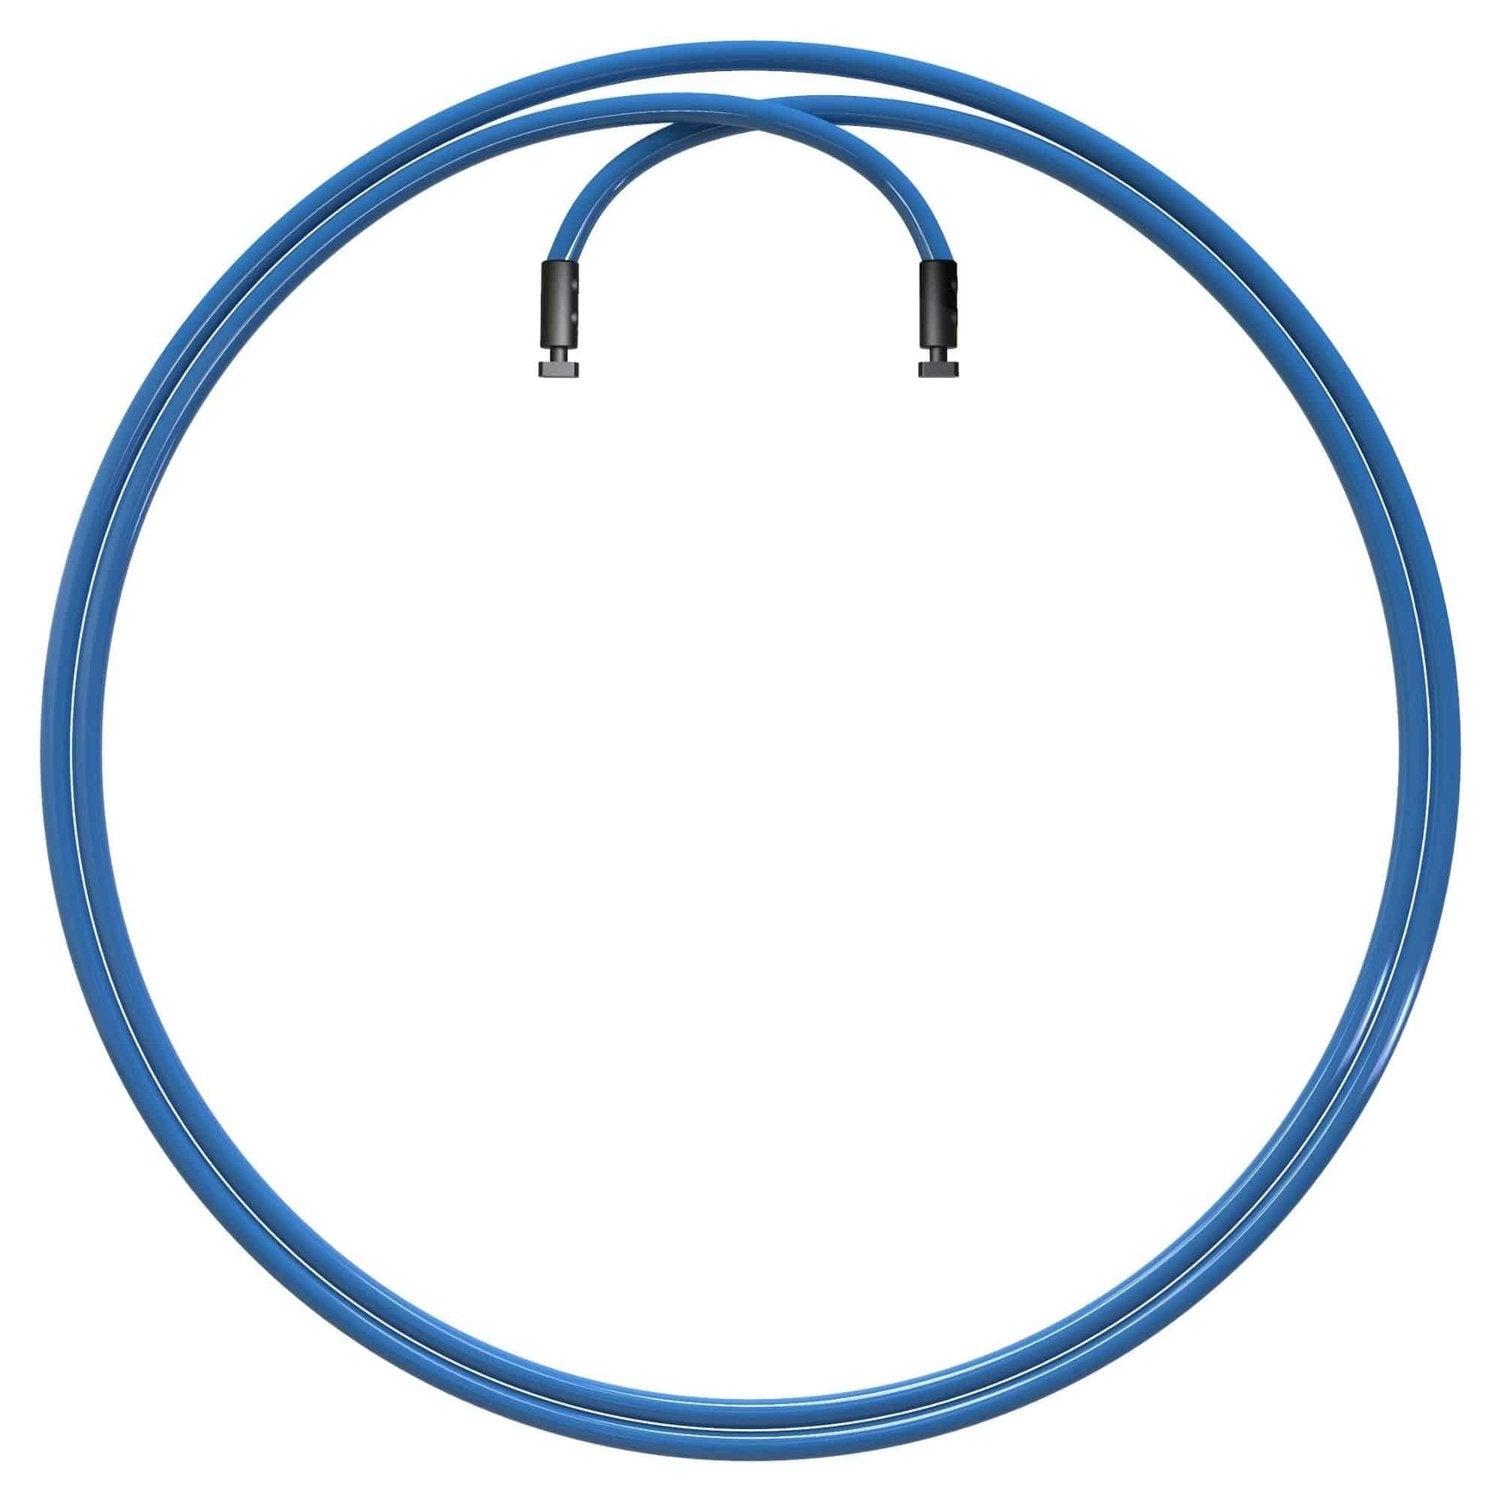 Velites Monster-Kabel für Earth 2.0 Jump Rope (8 mm) kaufen bei HighPowered.ch